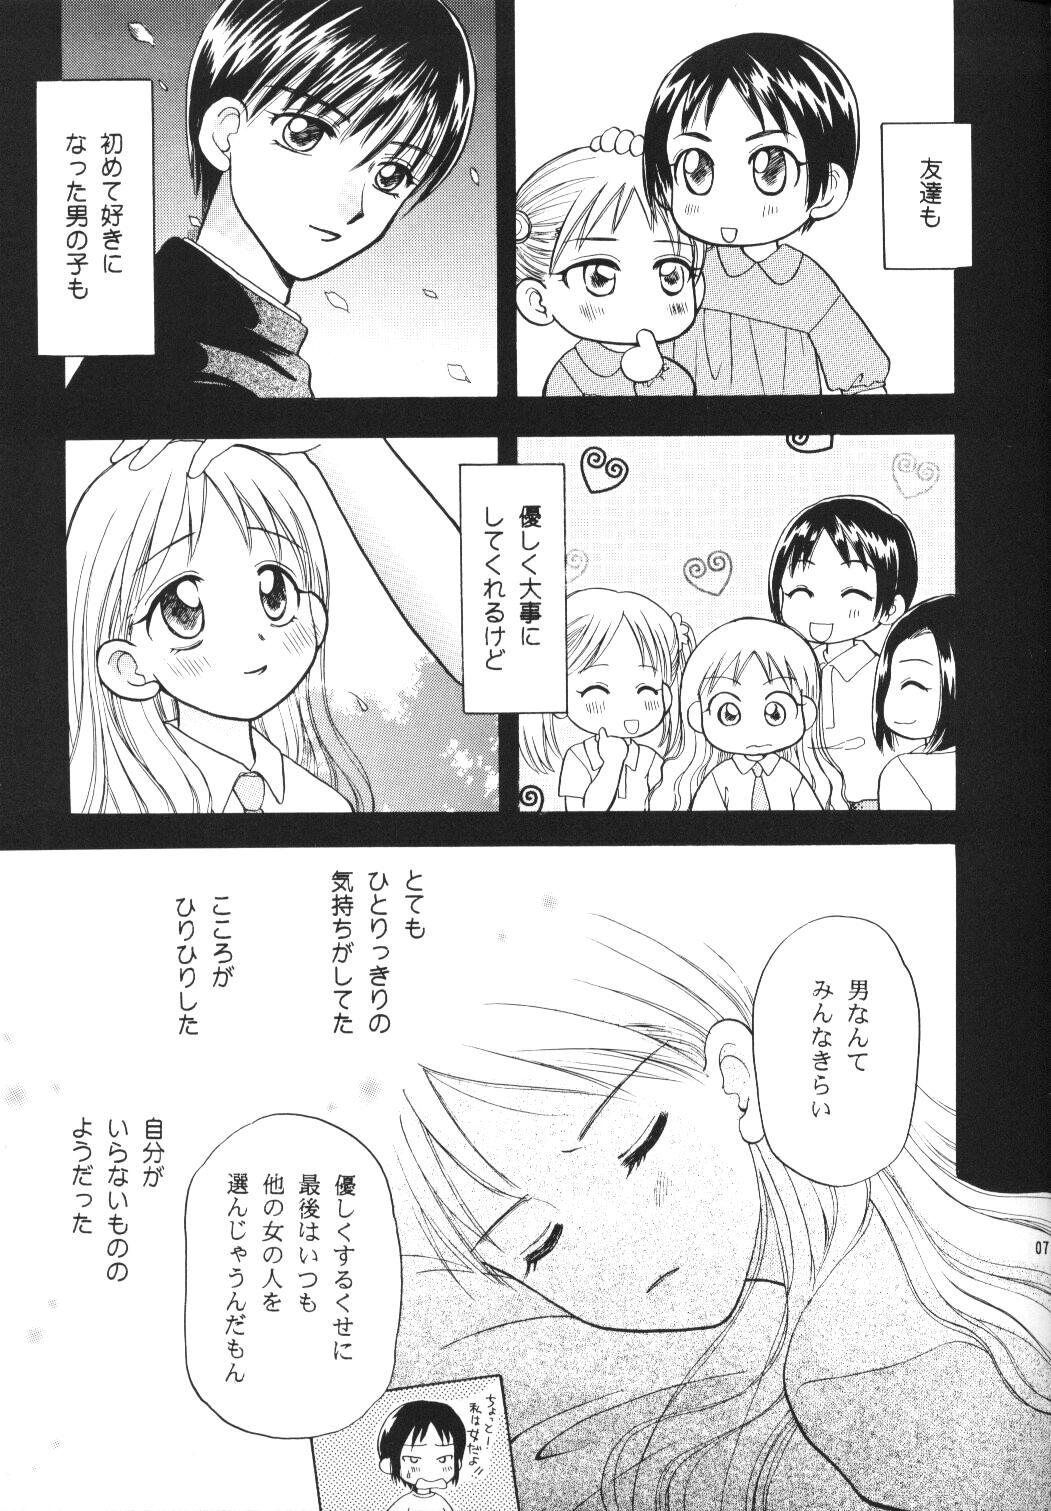 Con Tenshi no Girigiri - Kare kano Free - Page 6